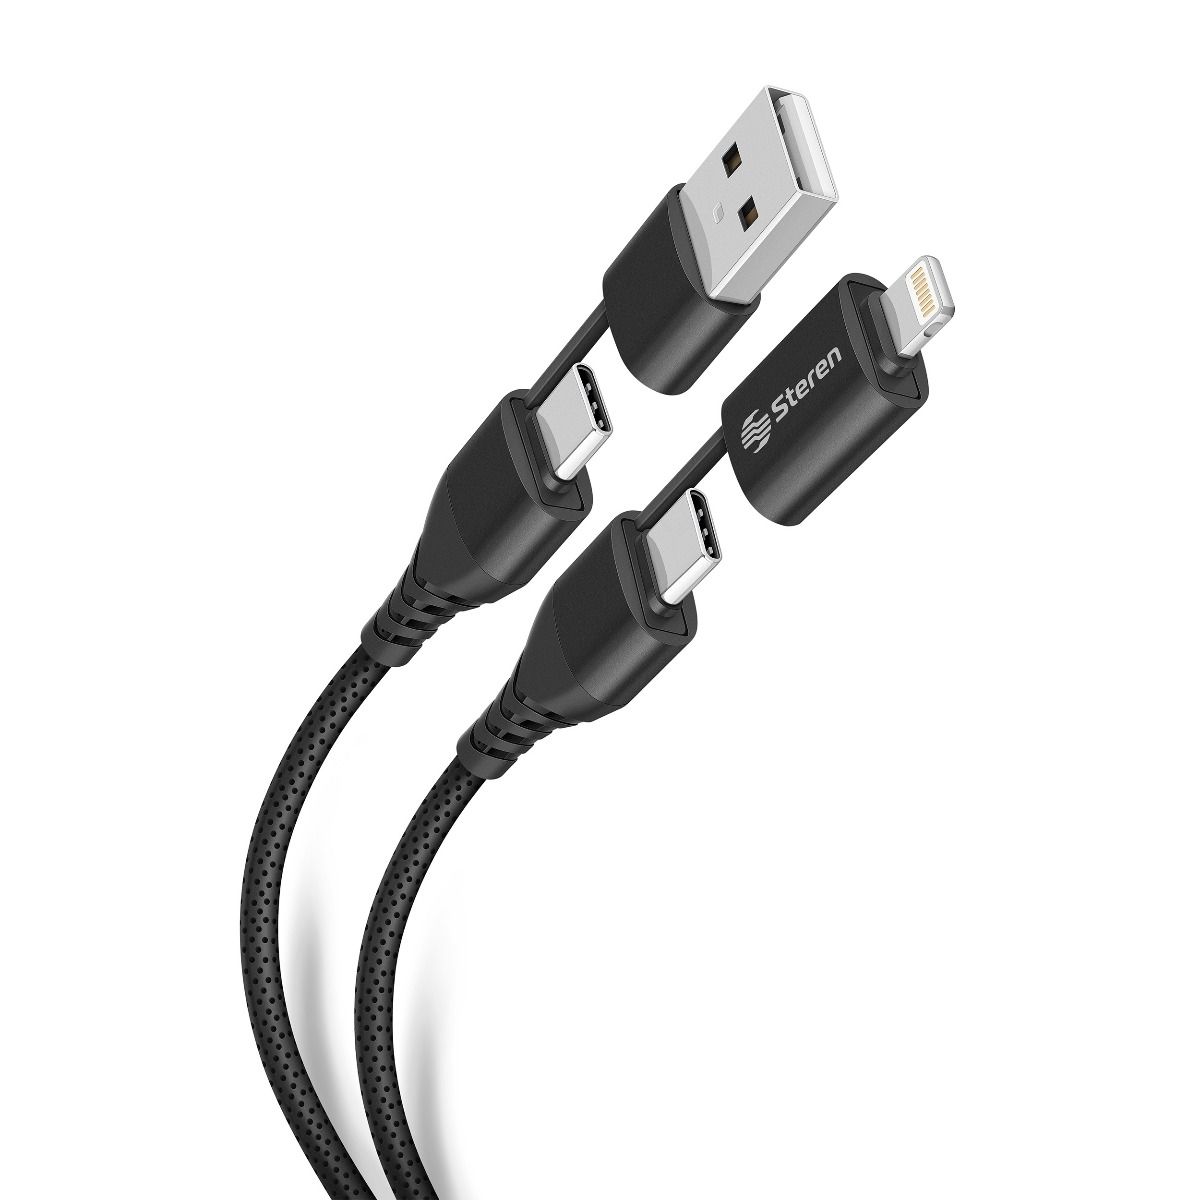 Historia del cable USB C a Lightning - uni Detrás del diseño 3